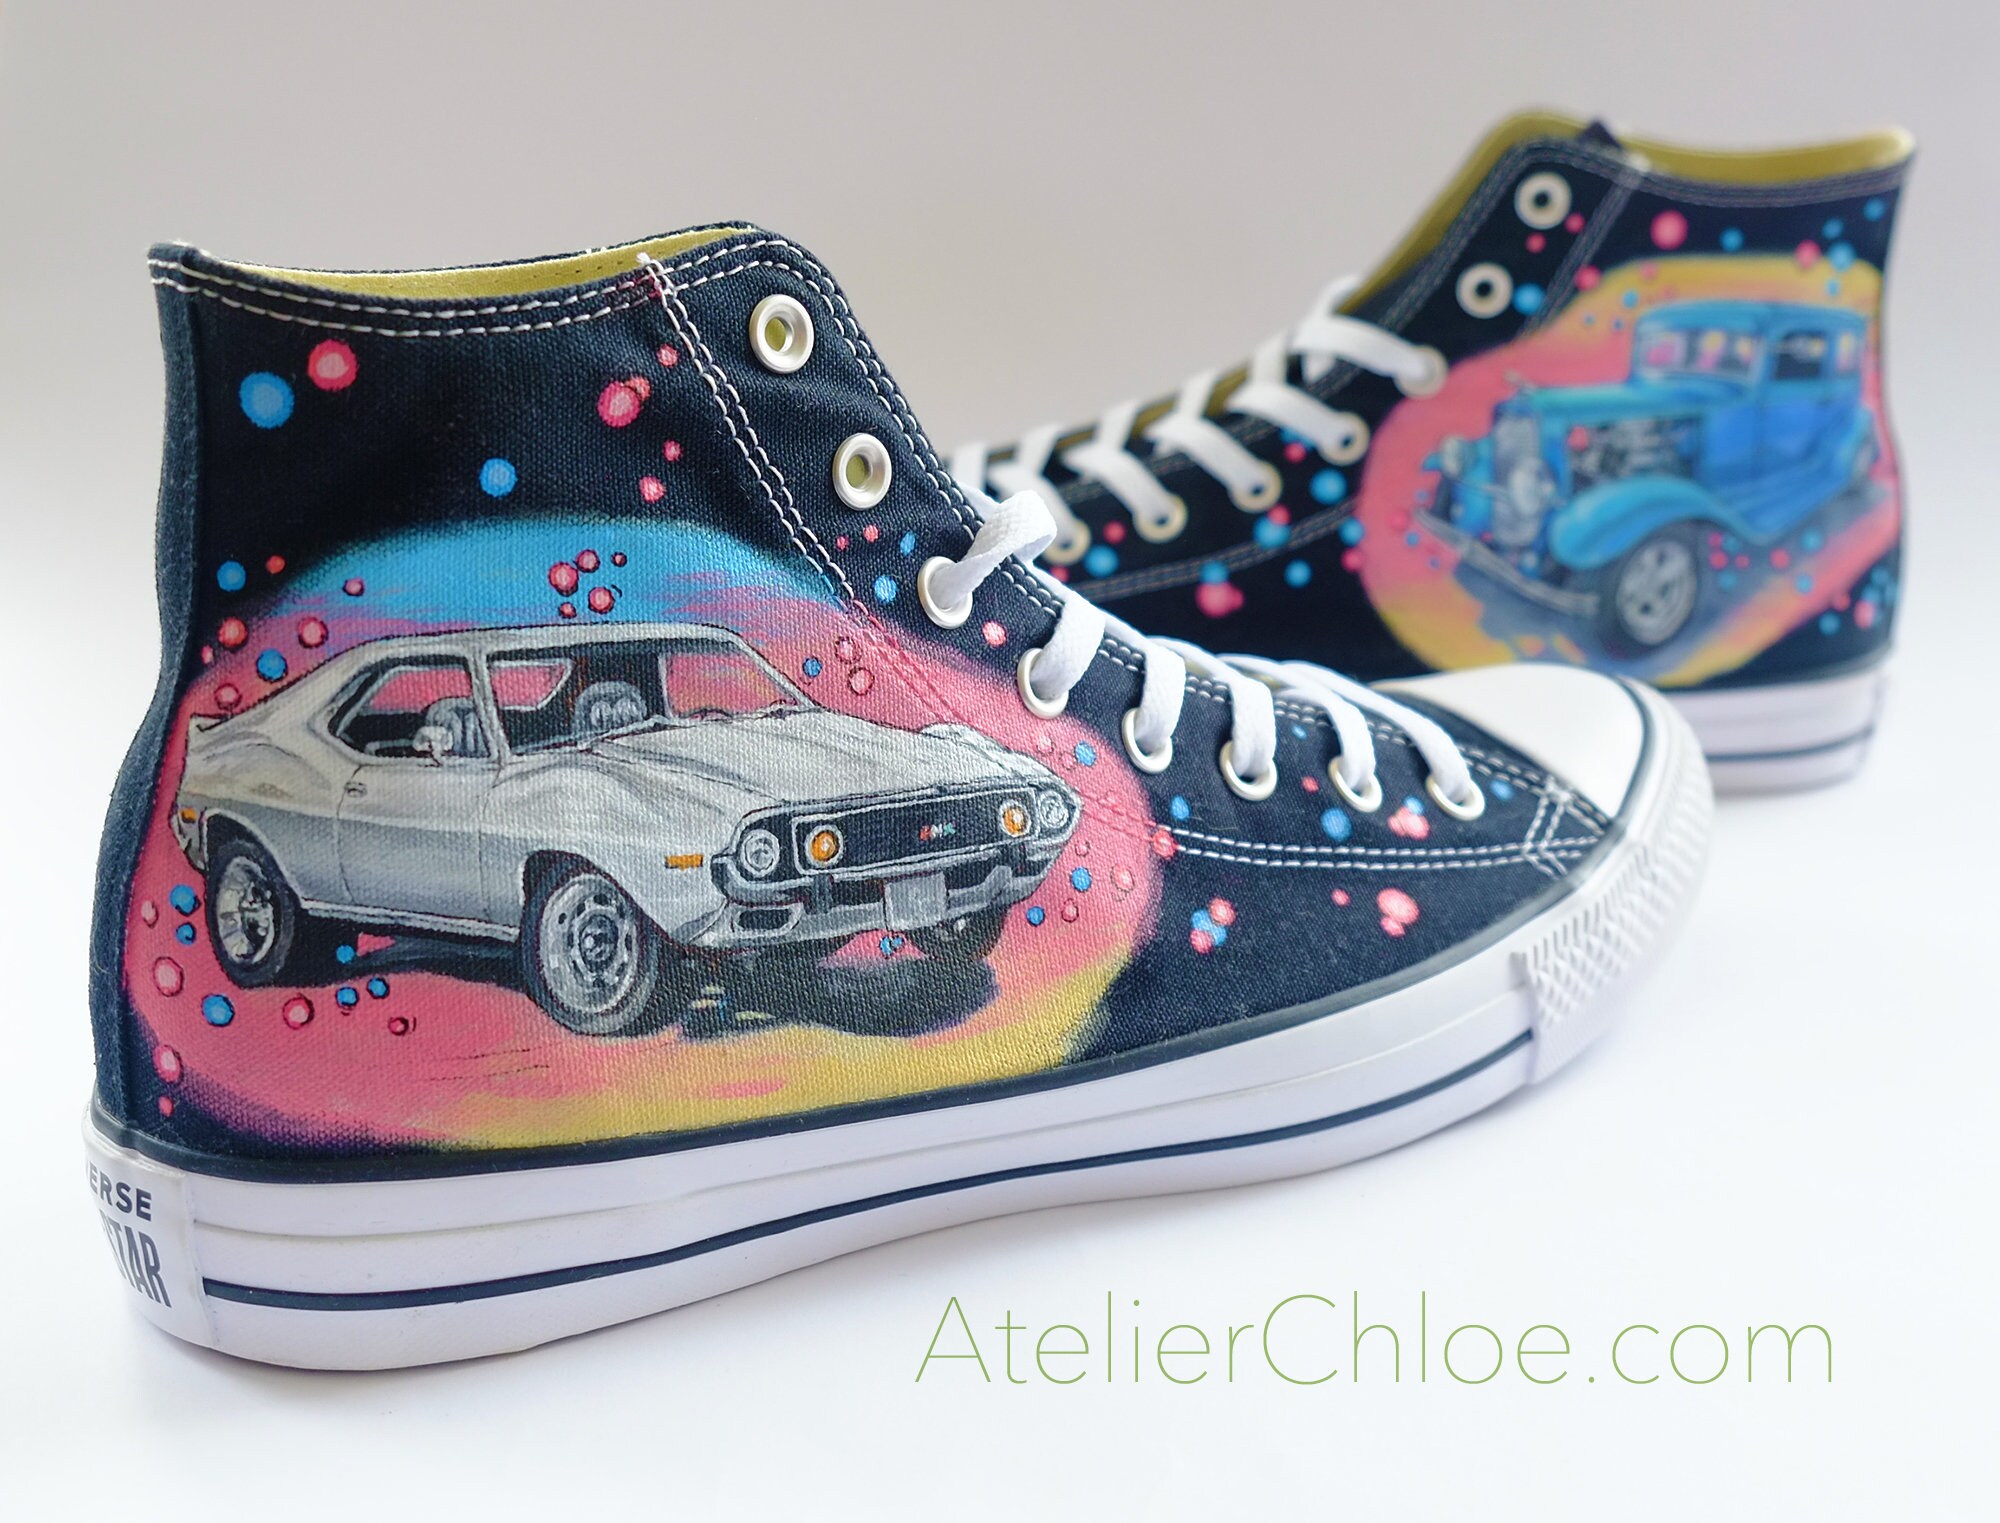 Cars Shoes amante del coche Converse pintura - Etsy México